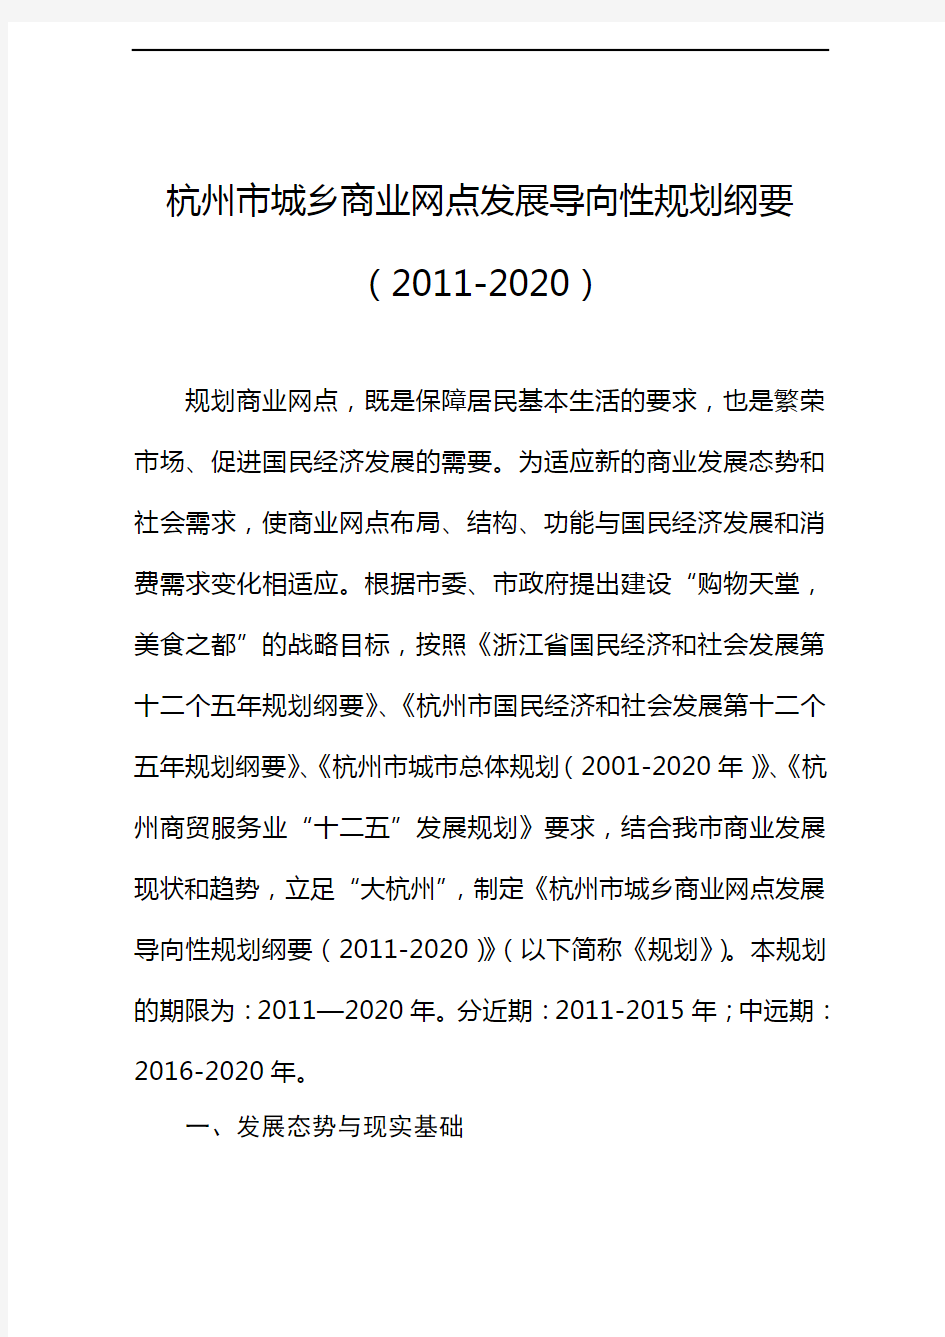 《杭州市城乡商业网点发展导向性规划纲要(2020年)》